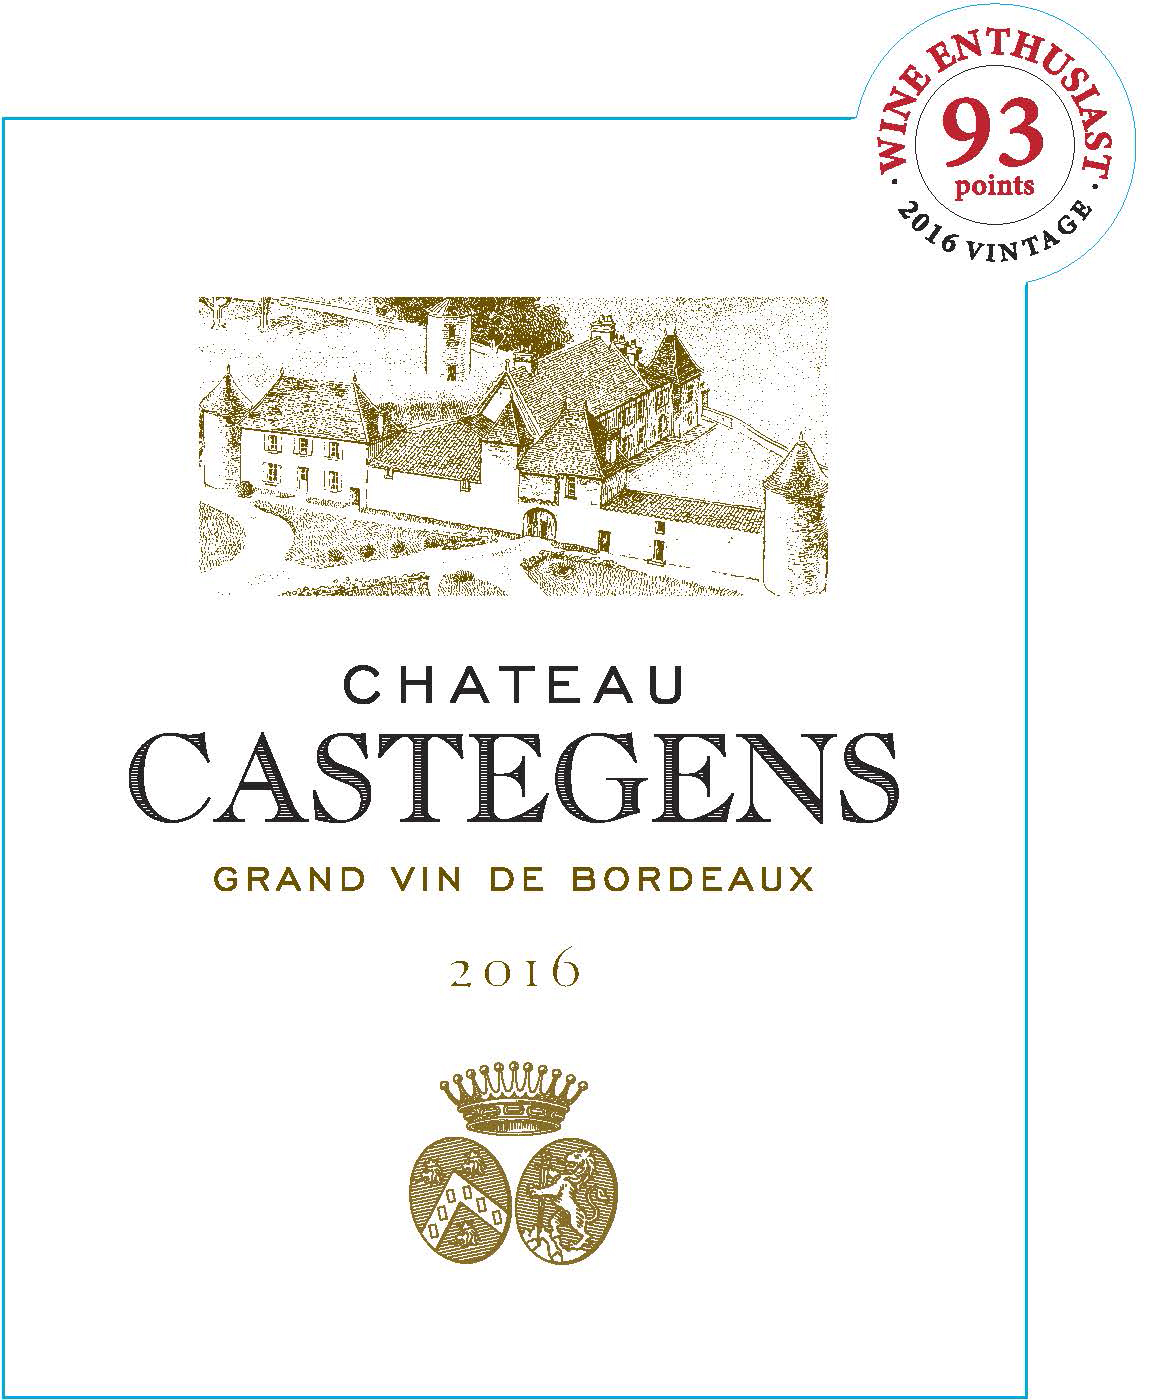 Chateau Castegens label